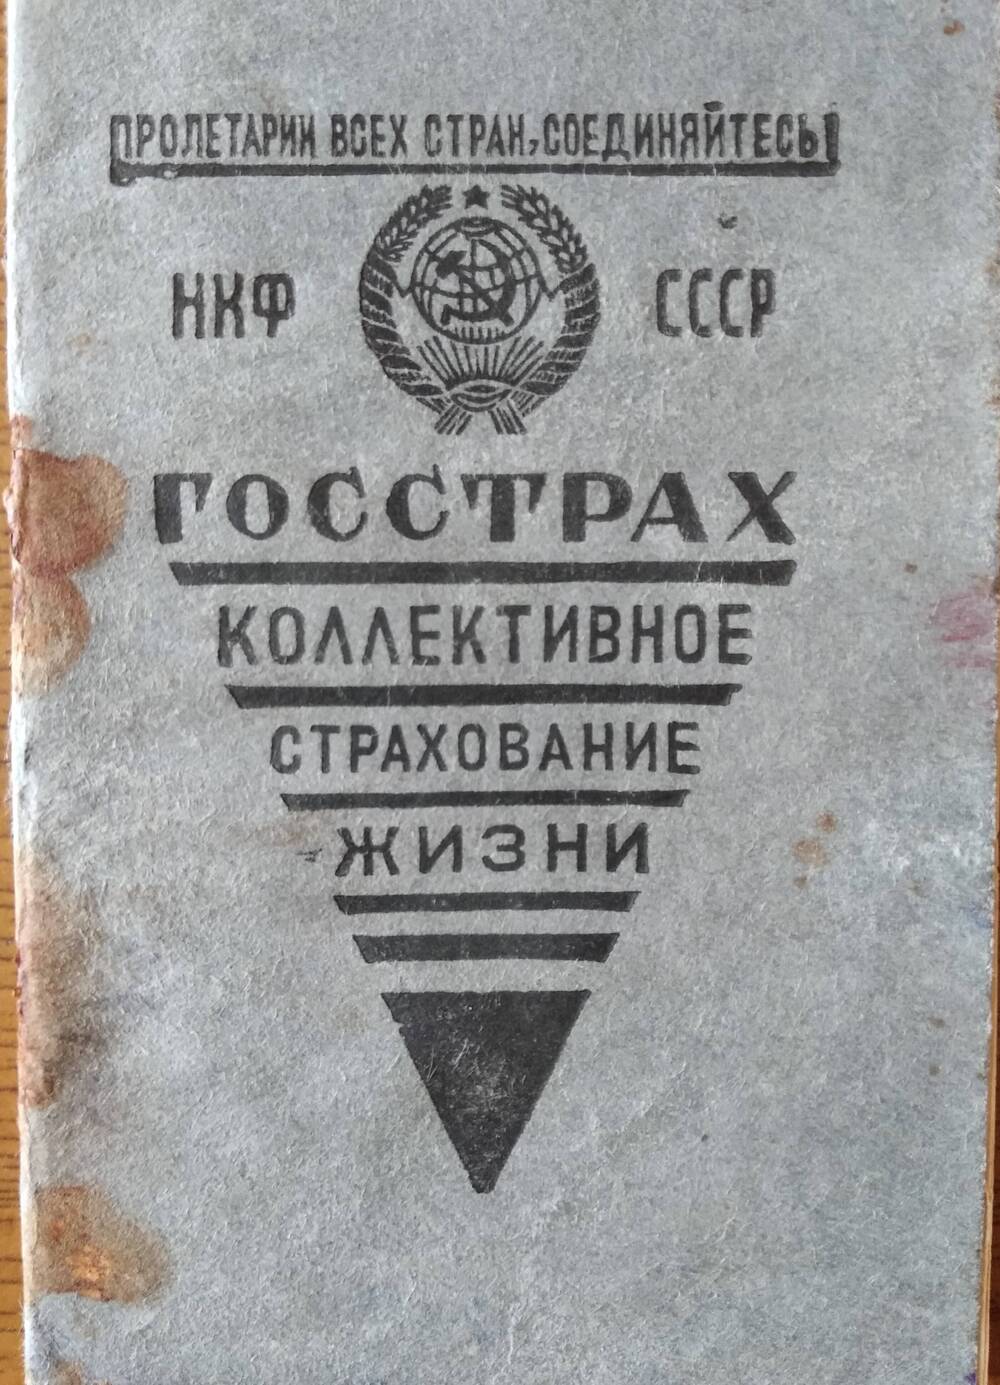 Страховое удостоверение Госстрах №004343 Борисова Александра Ивановича. 24 июня 1940 г.